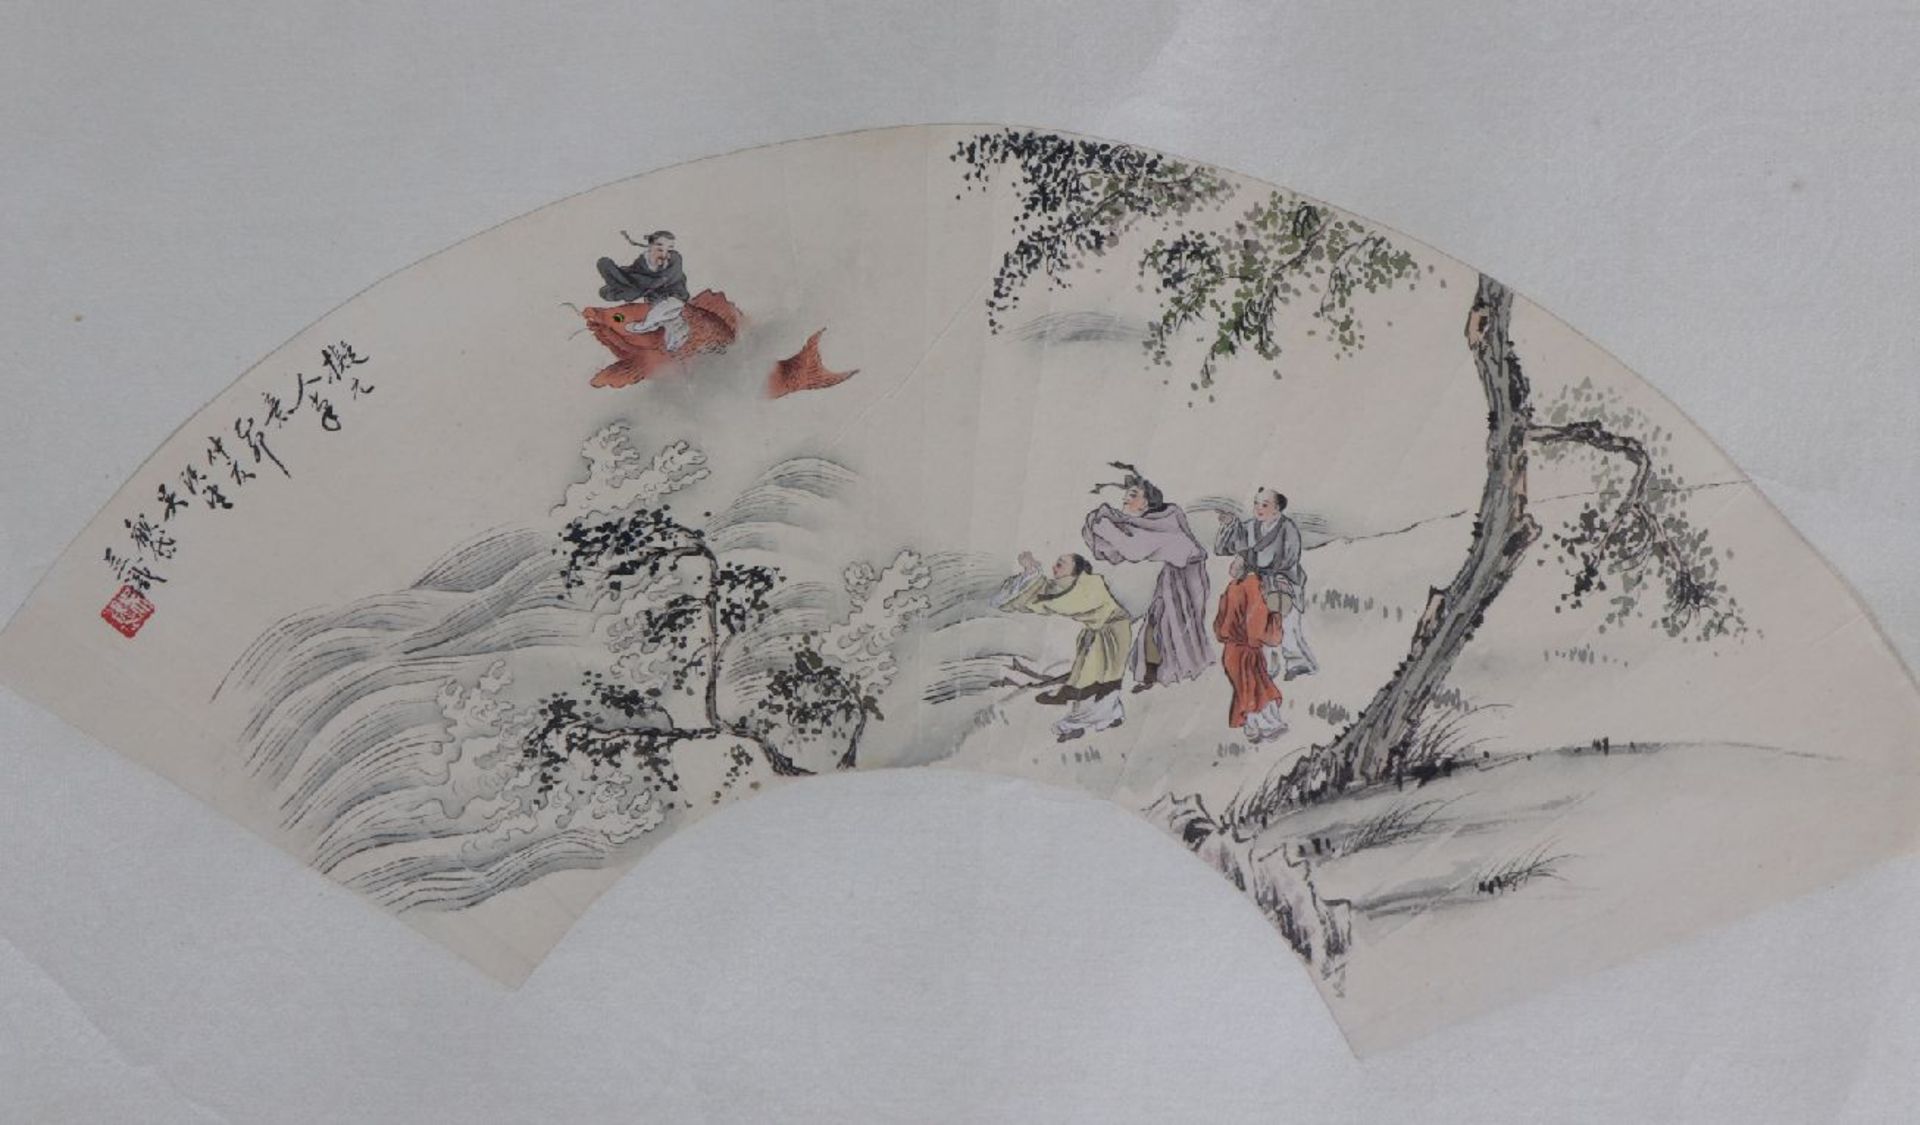 2 chinesische FächerentwürfeTusche auf Papier, 1x mythologische Szene ¨Asiate auf Fisch reitend¨, - Bild 5 aus 6